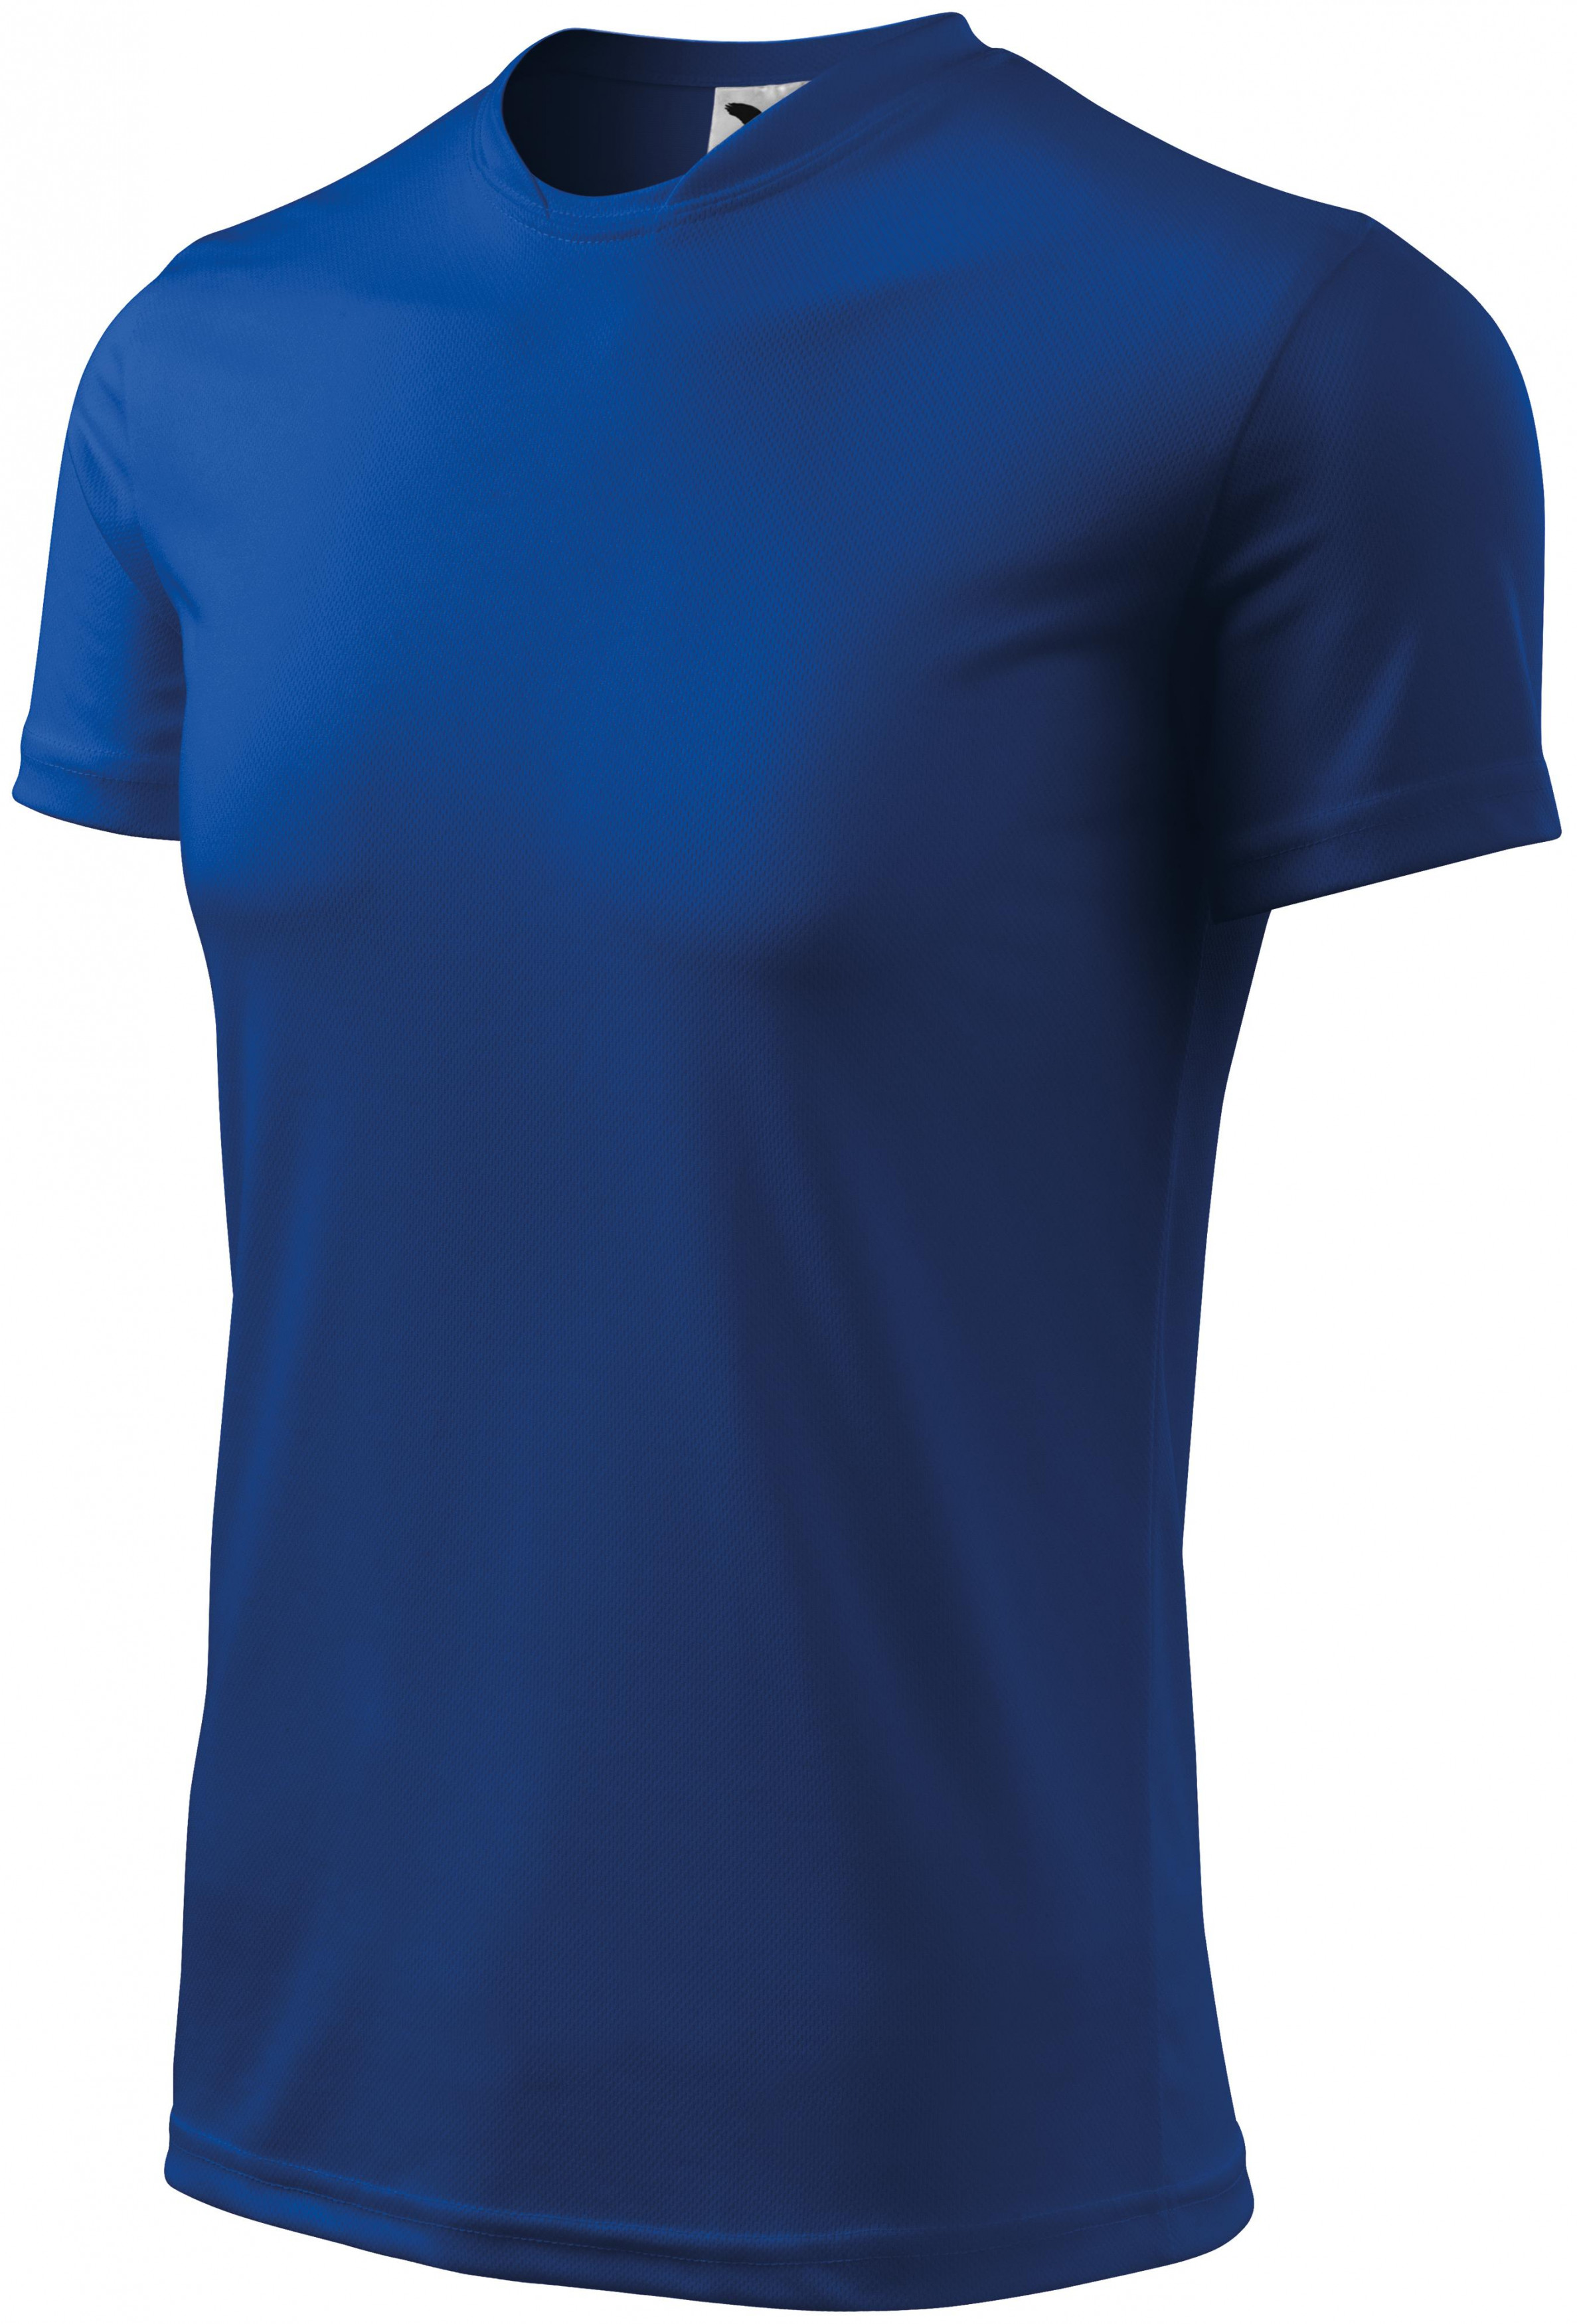 Športové tričko detské, kráľovská modrá, 146cm / 10rokov